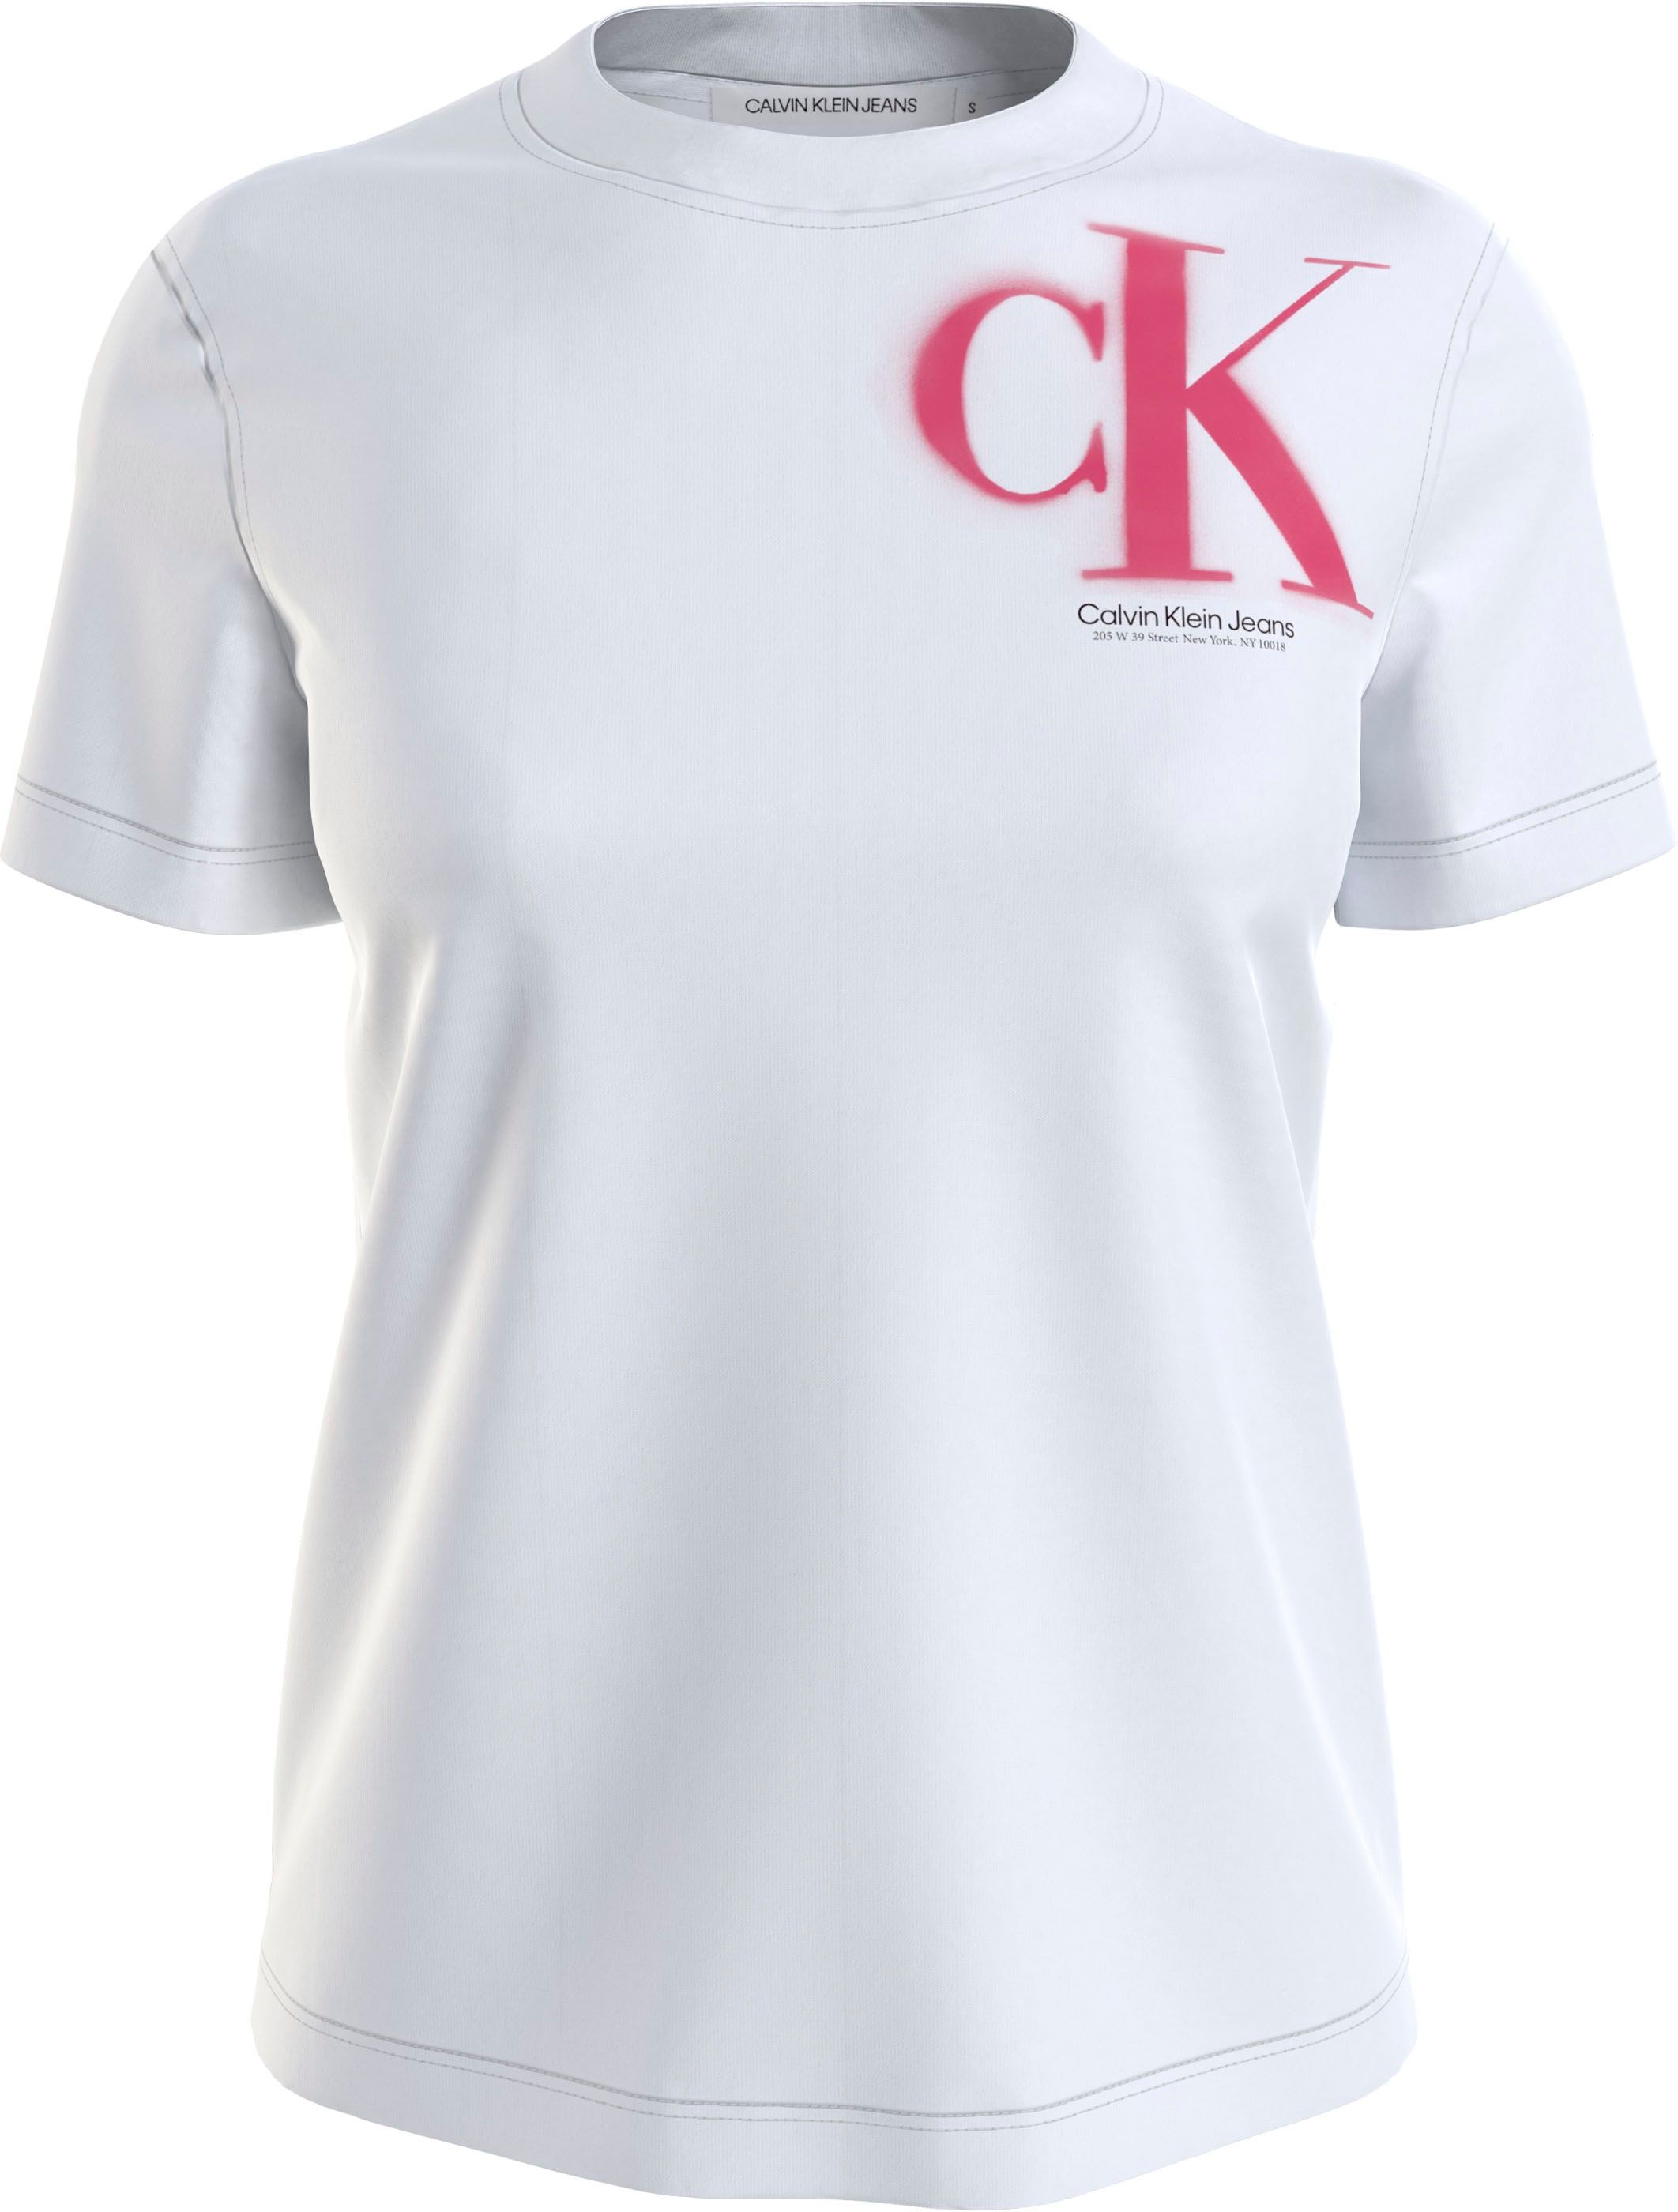 Klein Calvin im T-Shirt, Jeans Spray-Design Logodruck bestellen versandkostenfrei mit ♕